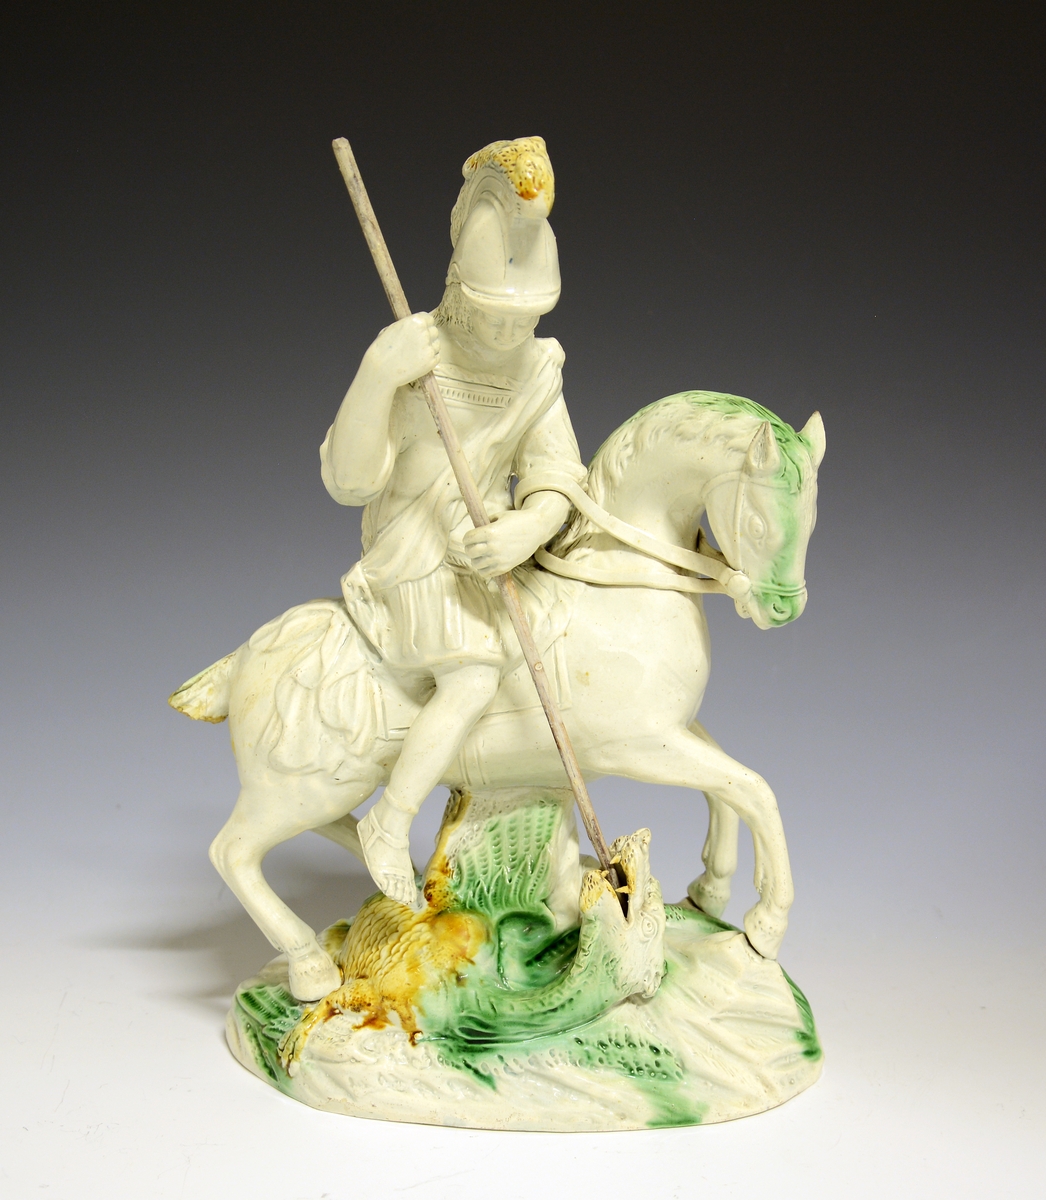 St. Georg til hest dreper dragen. Hvitglasert fajanse med håndmalte detaljer i grønt og gult.